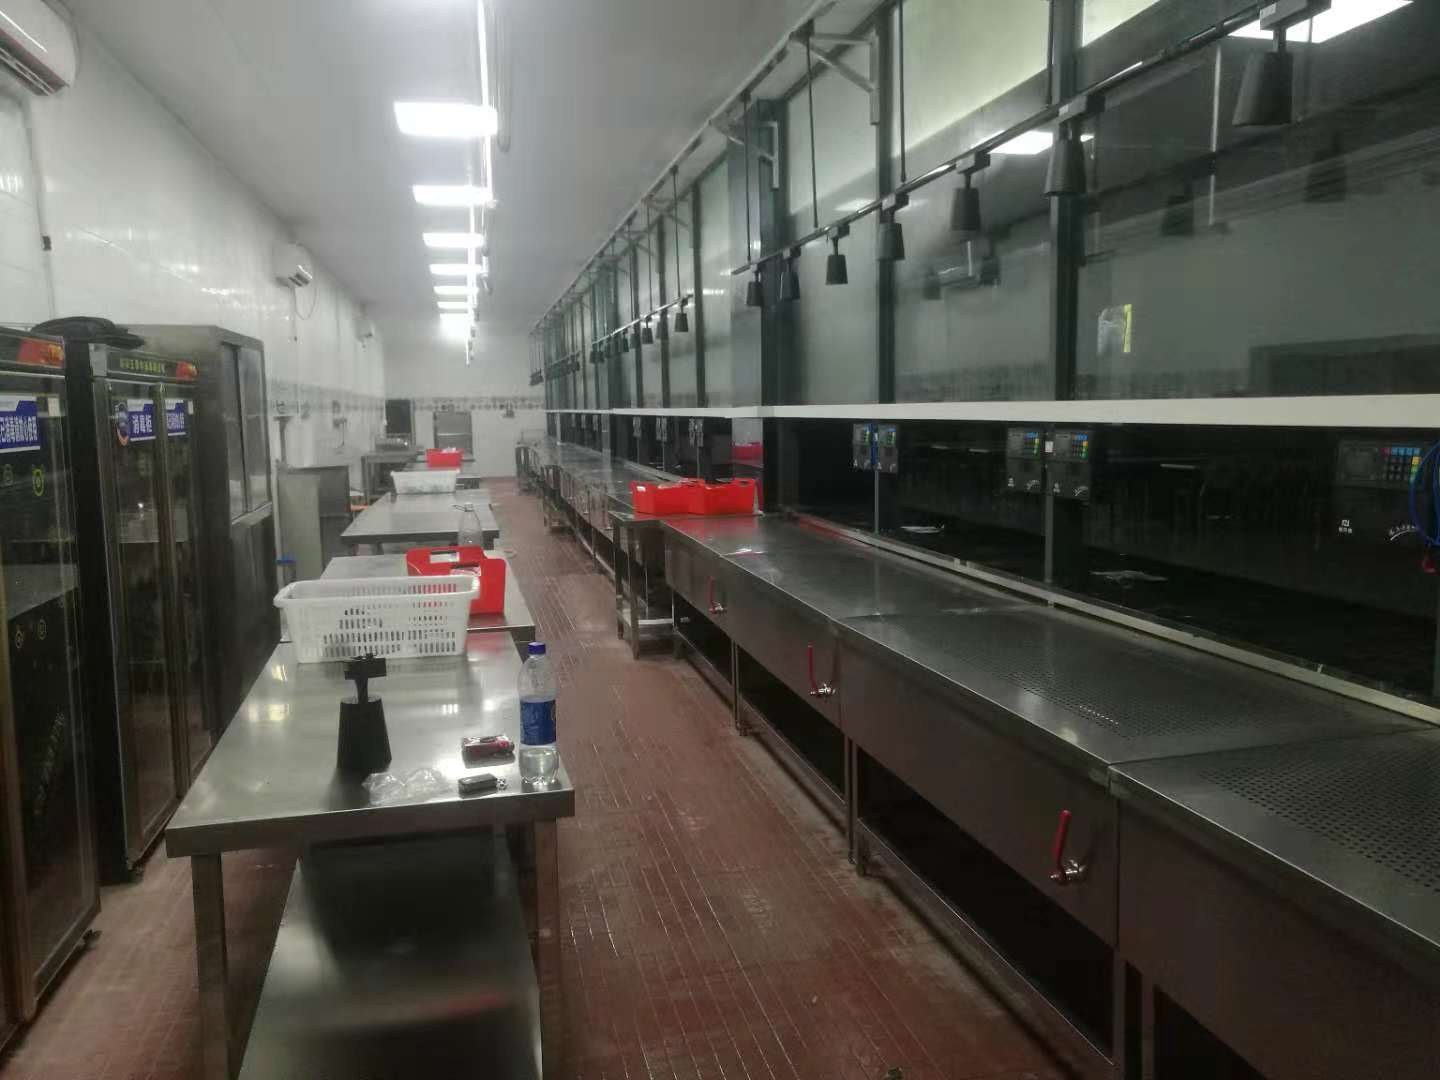 广州雍隆厨房设备有限公司河源分部开通承接厨房工程抽排烟工程安